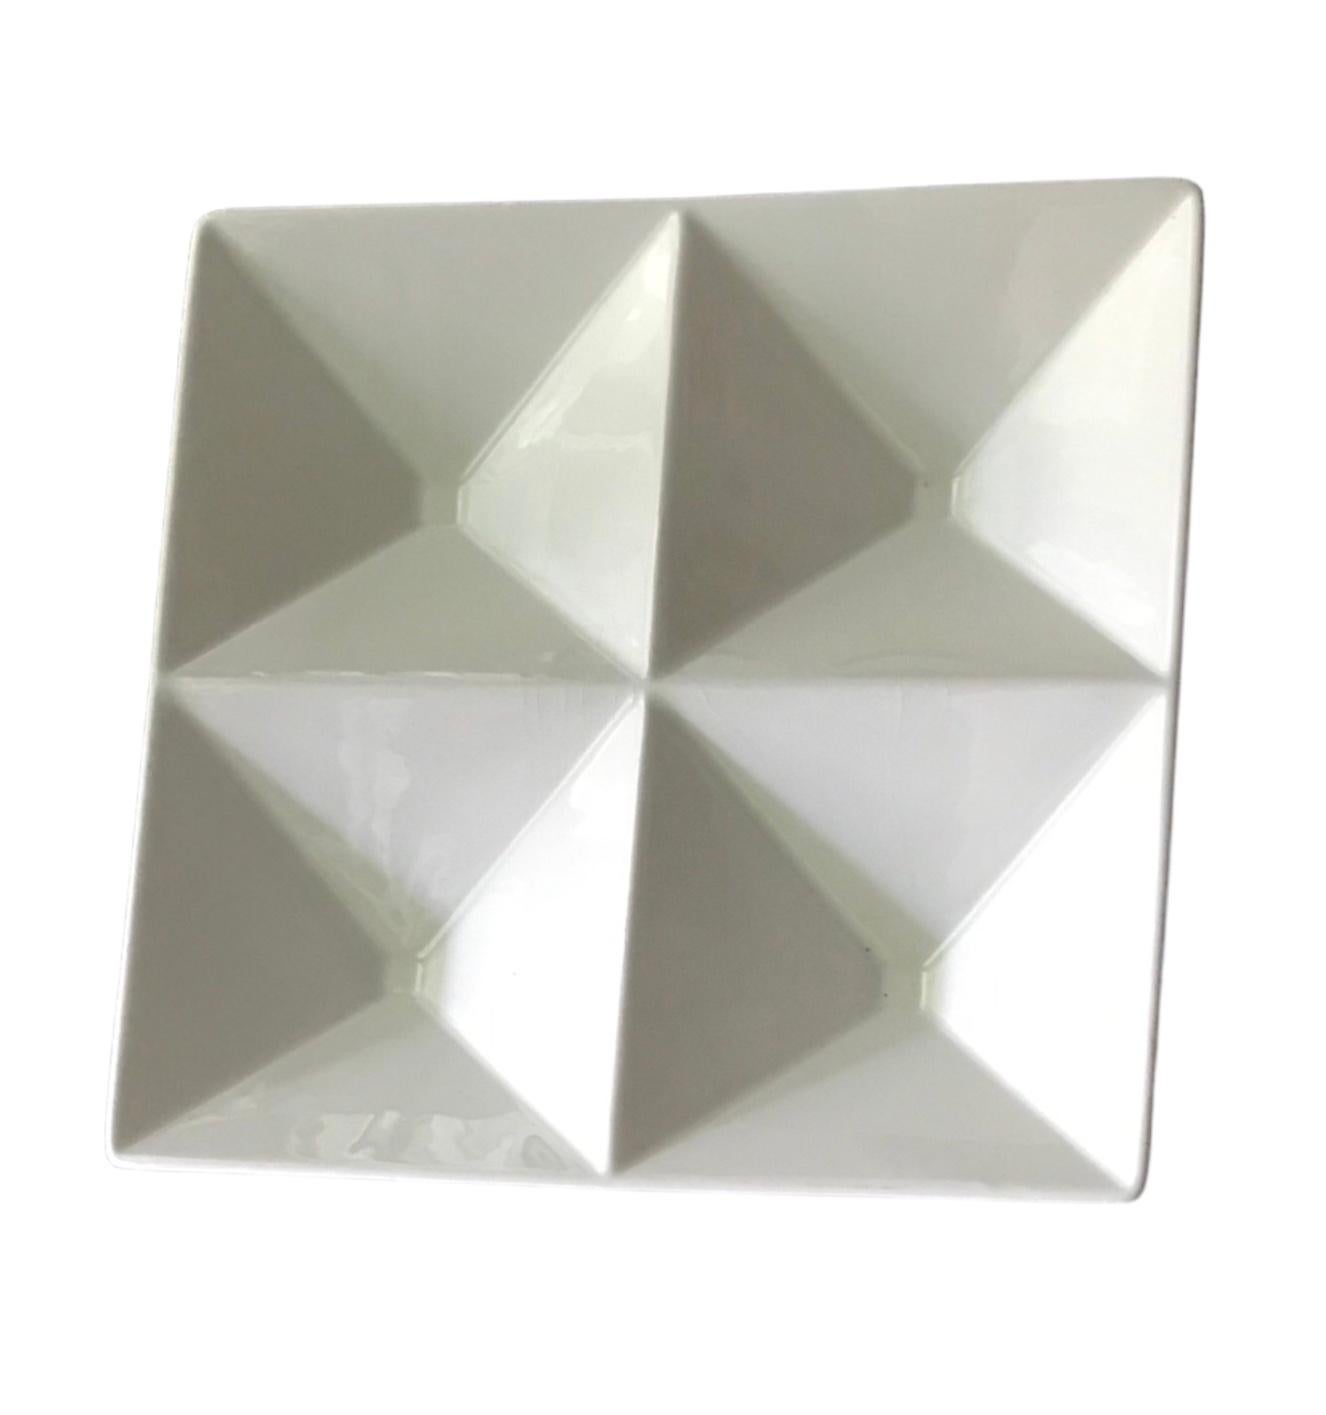 Die 1957 von Kaj Franck (1911-1989) für Arabia (heute im Besitz von iitala) entworfene Platte Origami Design Mid Century Modern ist mit ihrem glatten und geometrischen Space Age Modern-Stil zeitlos. Die Platte wurde als Servierplatte konzipiert, da